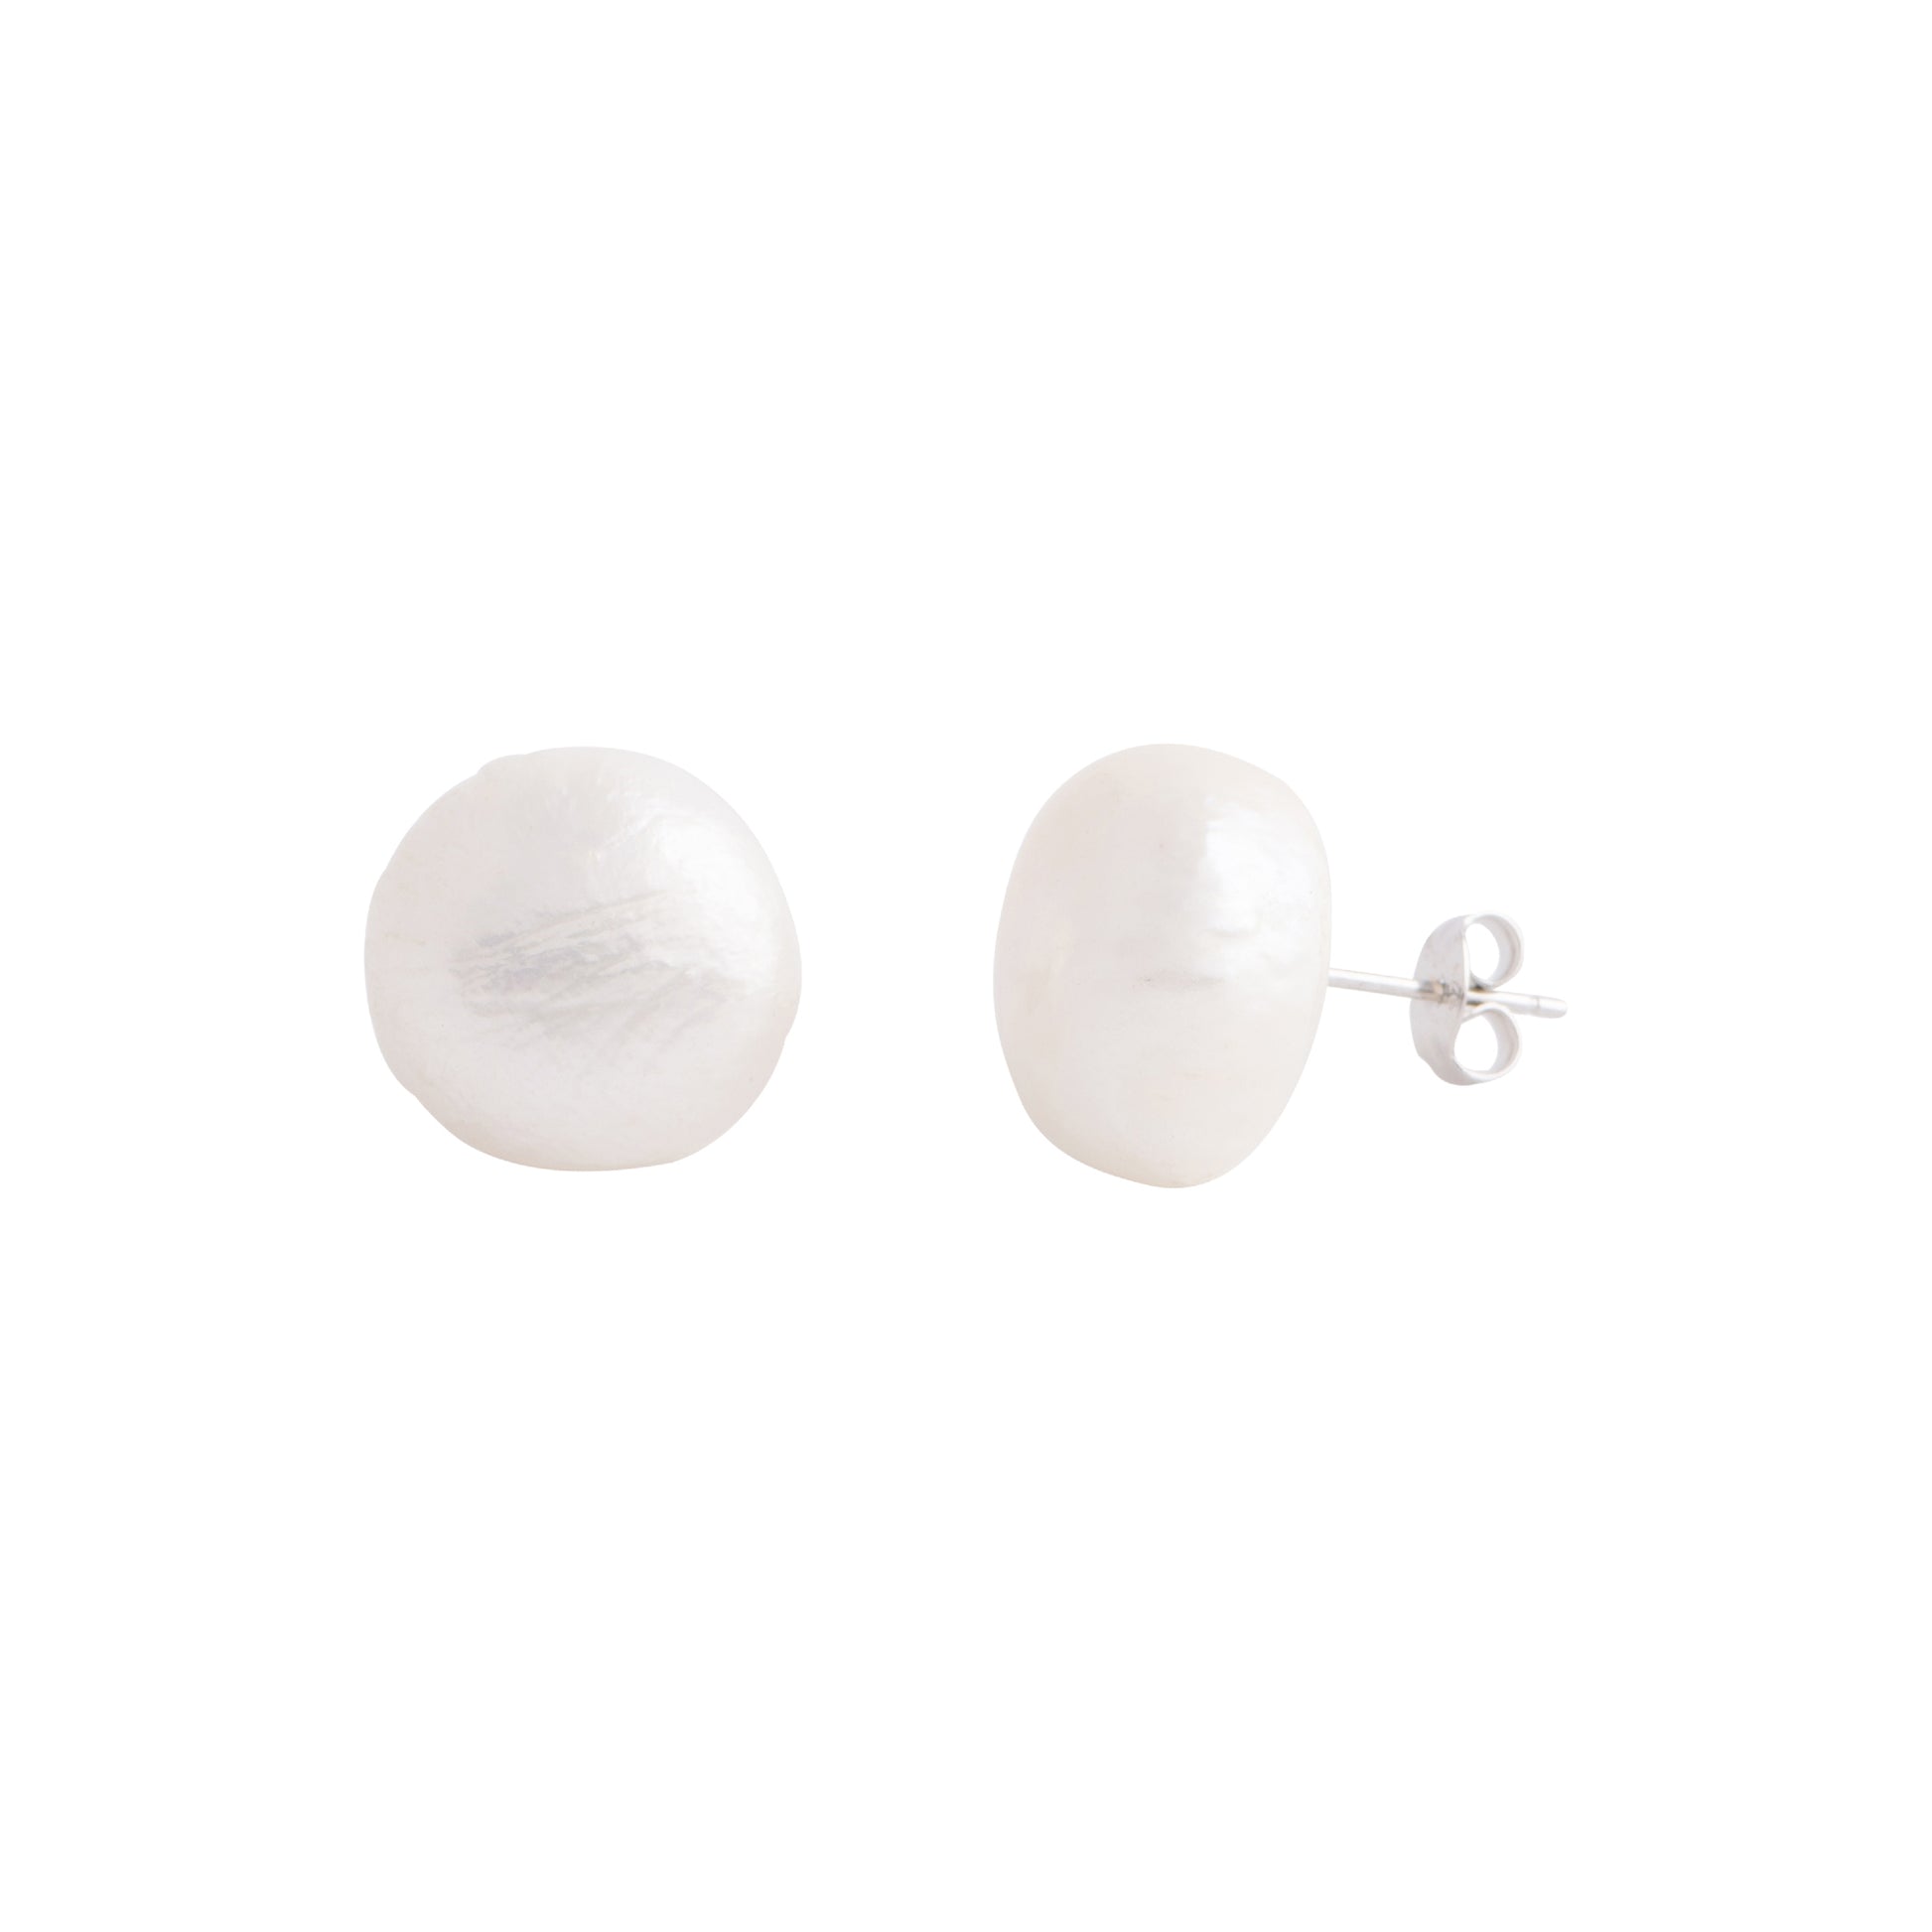 Elara - Large (12 - 15mm) pearl nickle-free earrings (White pearls)